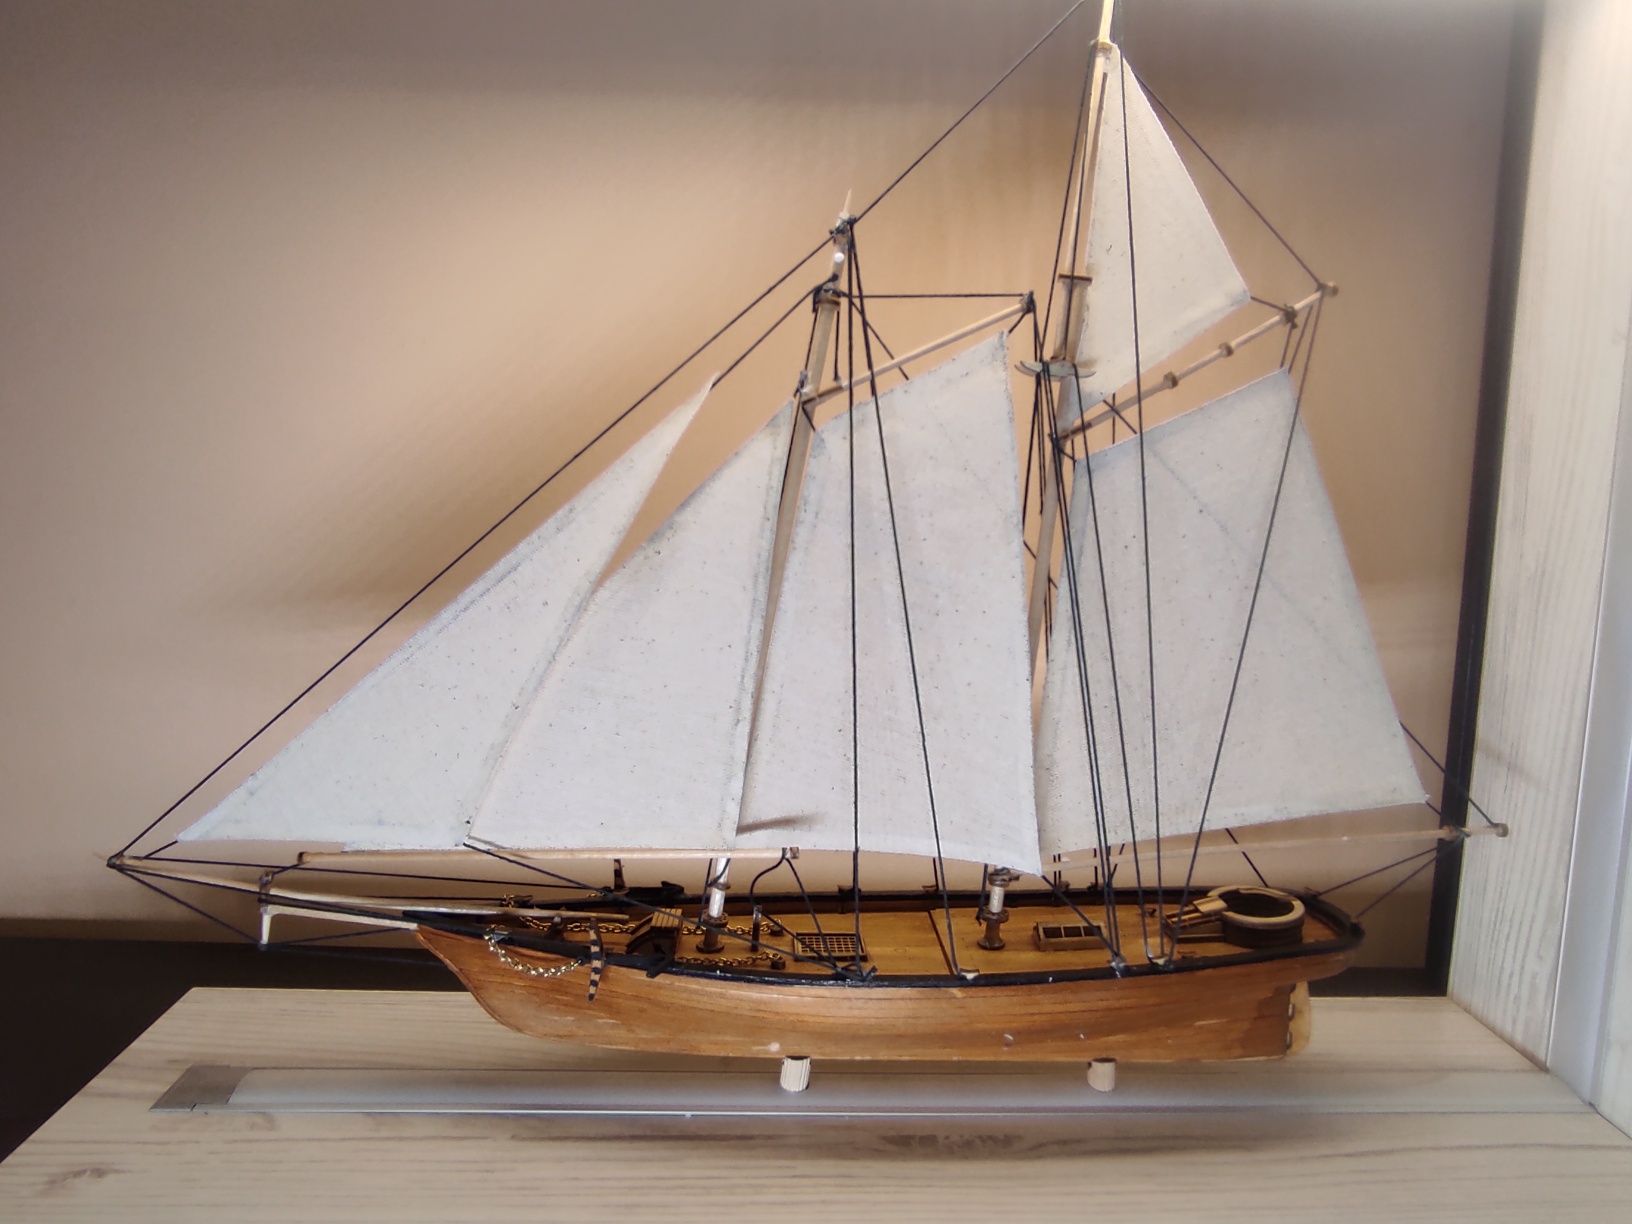 Модель парусного корабля